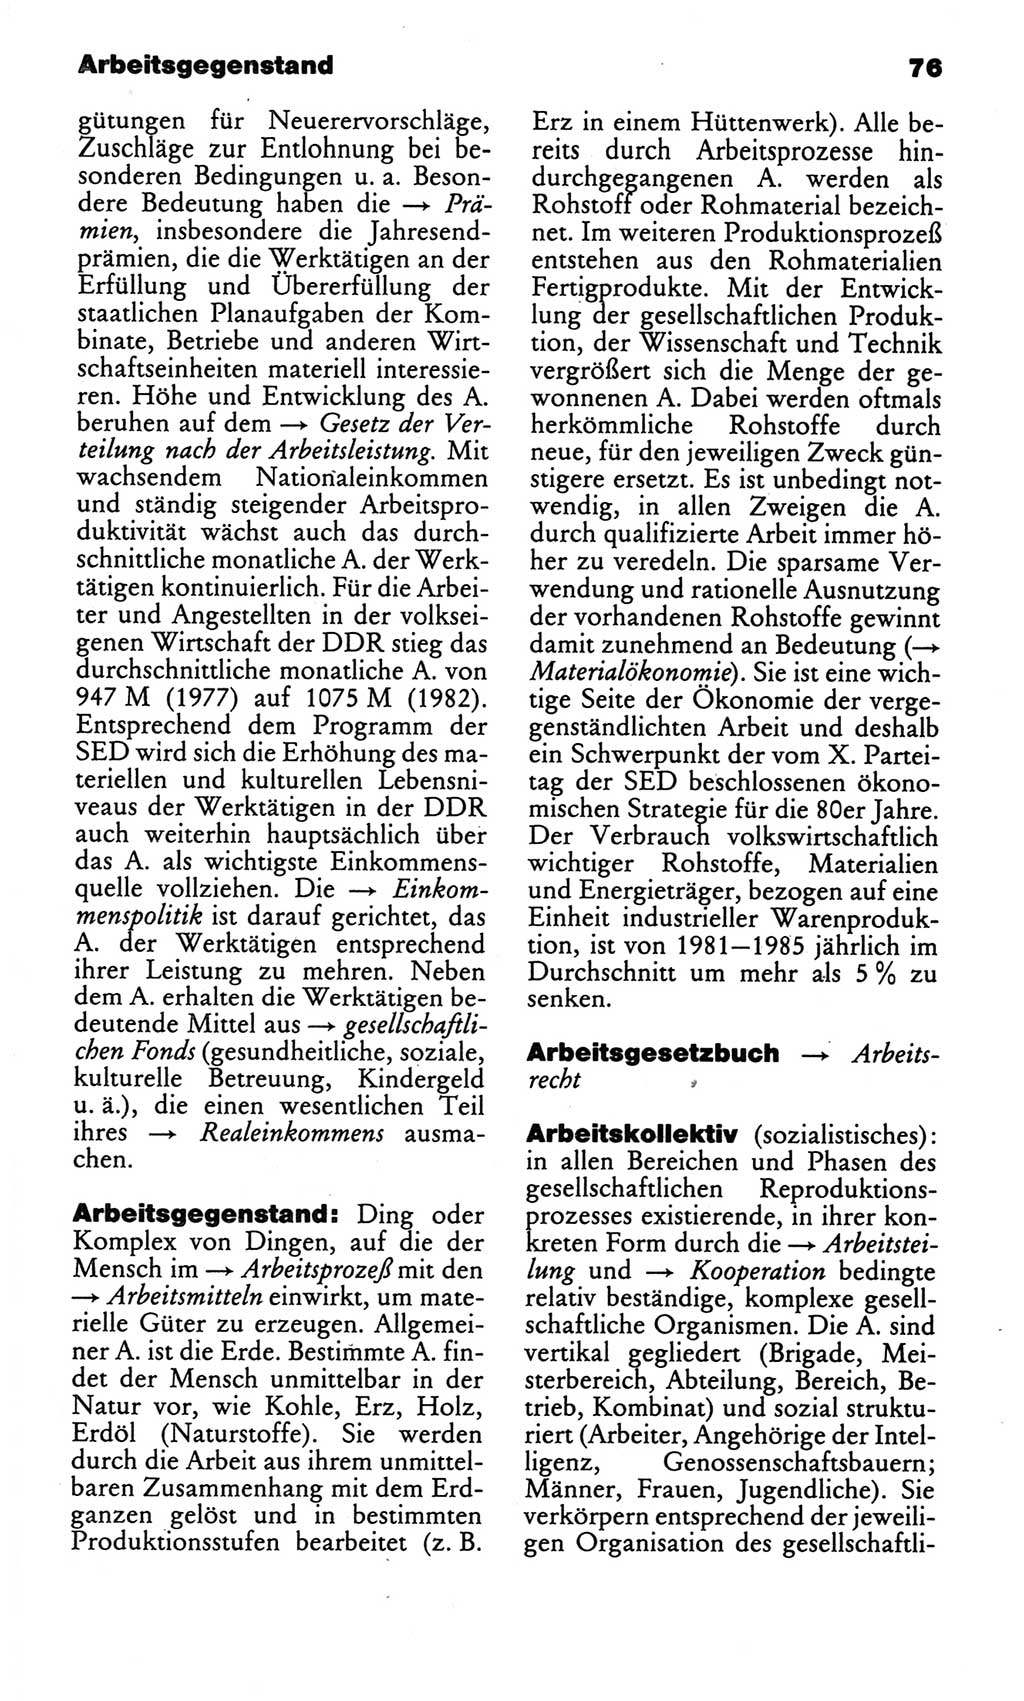 Kleines politisches Wörterbuch [Deutsche Demokratische Republik (DDR)] 1986, Seite 76 (Kl. pol. Wb. DDR 1986, S. 76)